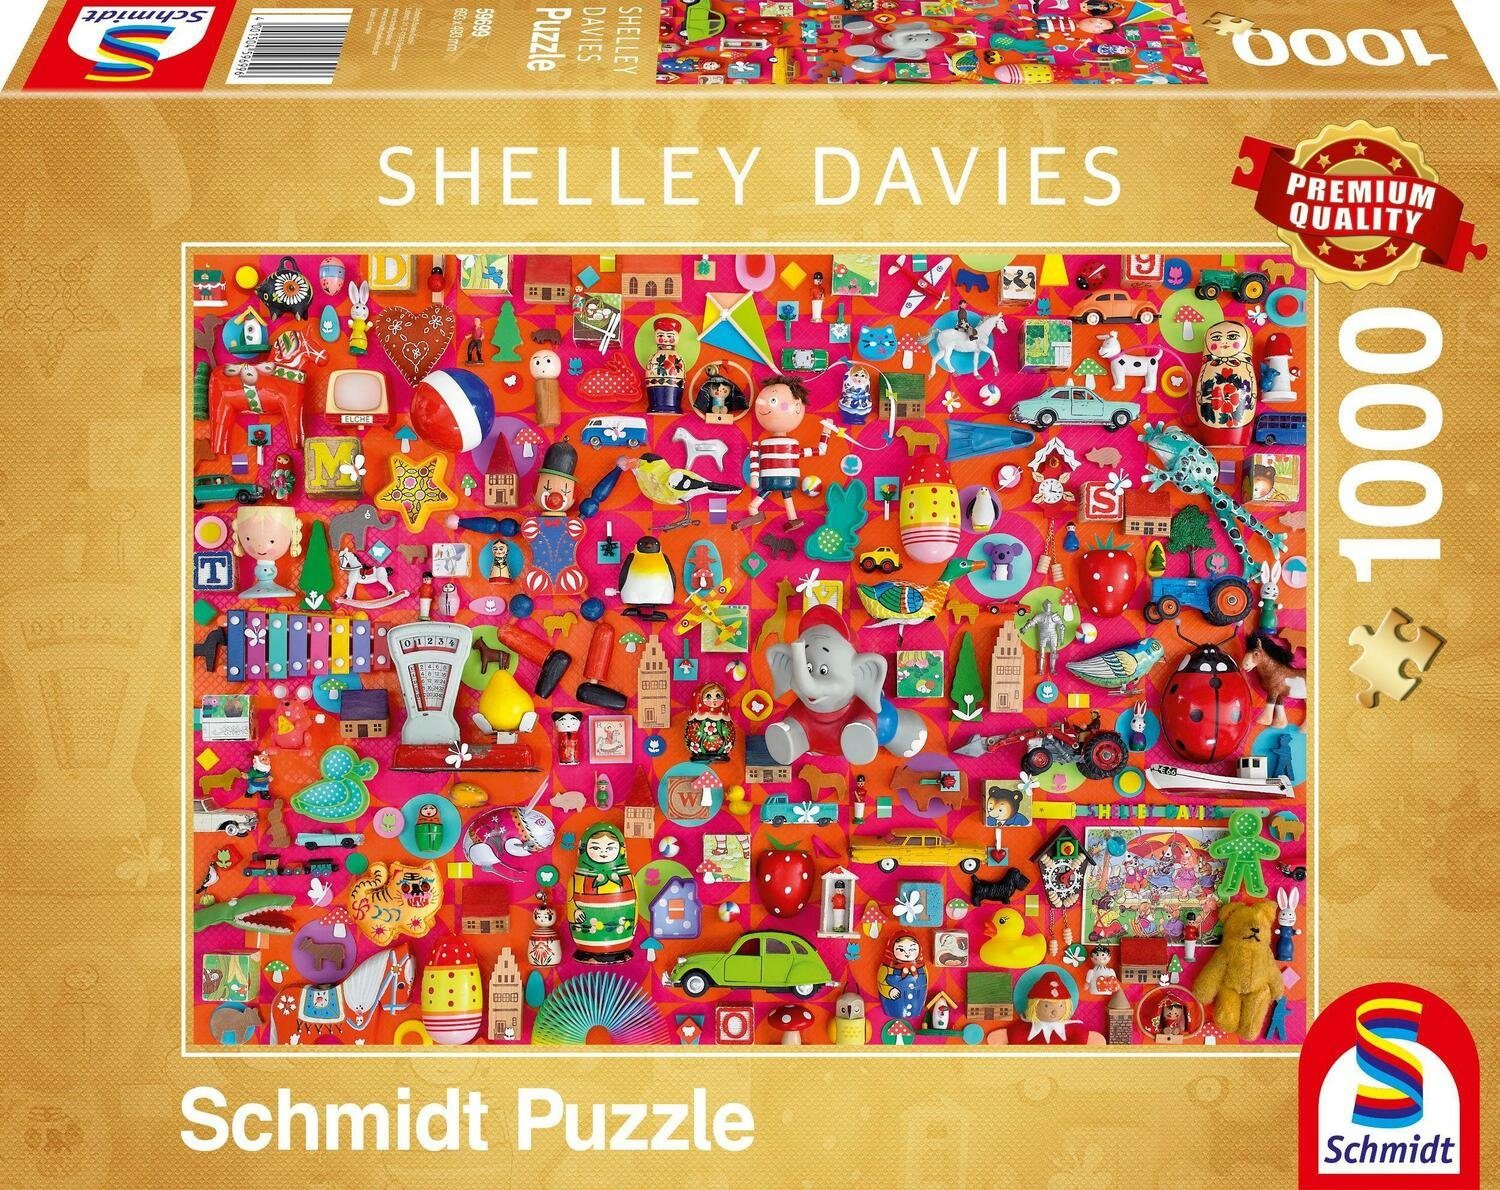 Schmidt Spiele Spielzeug 1000 Puzzle Puzzleteile 1.000 Teile, Puzzle Vintage